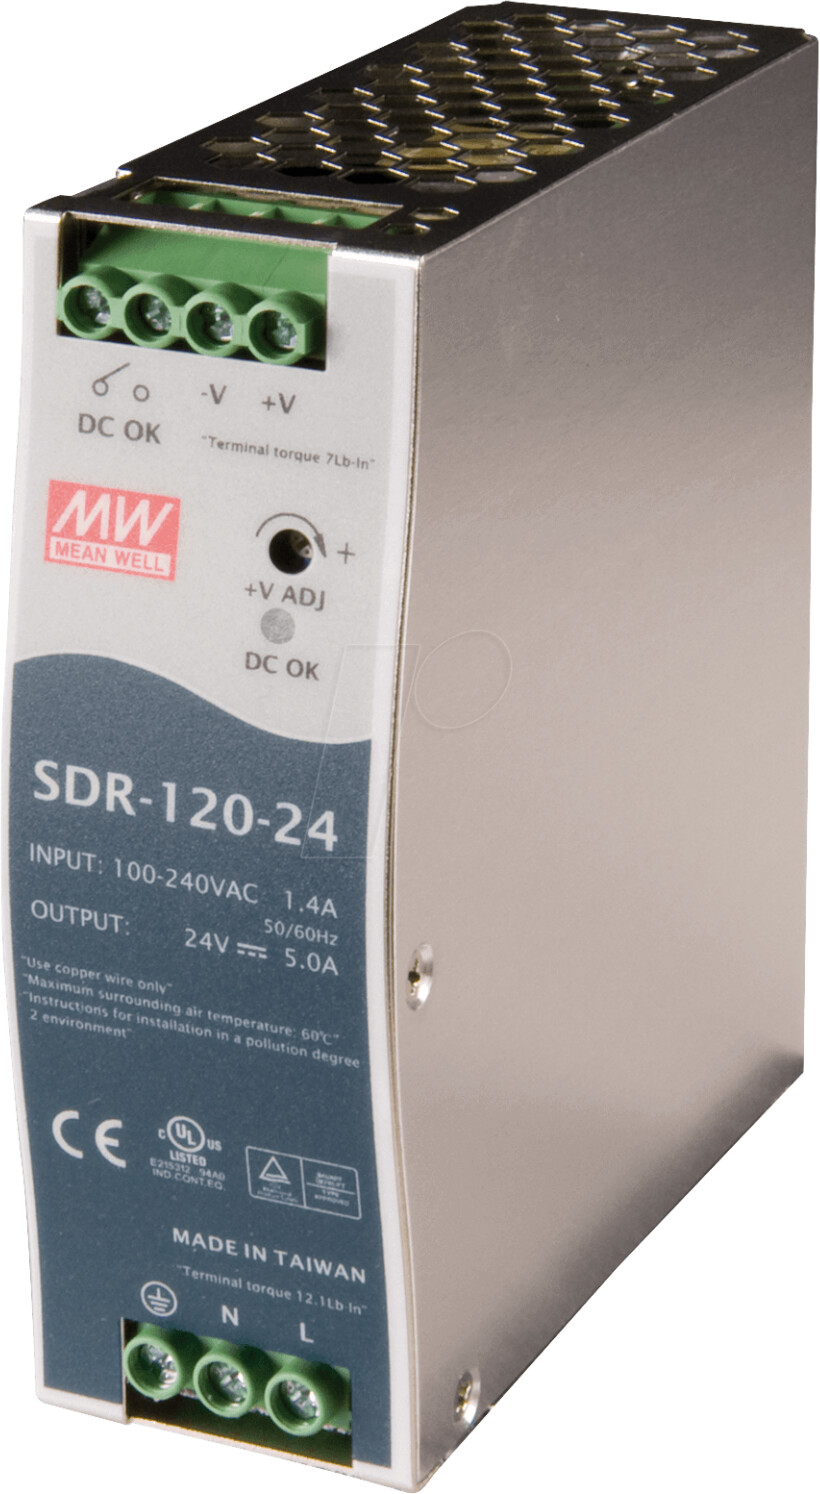 Mean Well SDR-120-12, 120W Hutschienen Netzteil 12V/10A, Single Phase